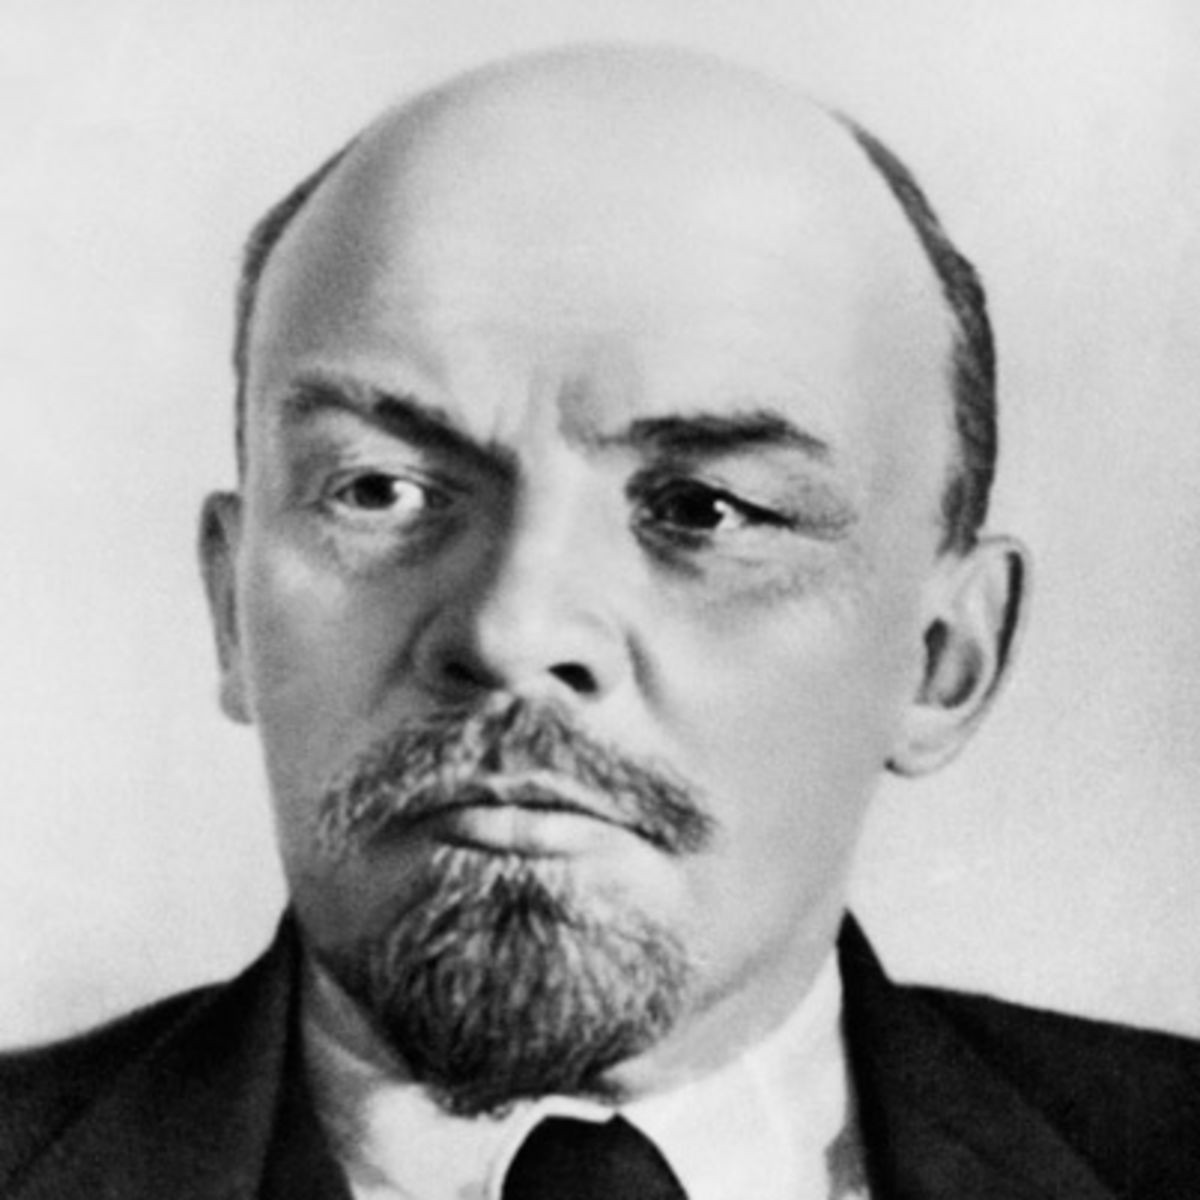 Lenin morals Image public domain